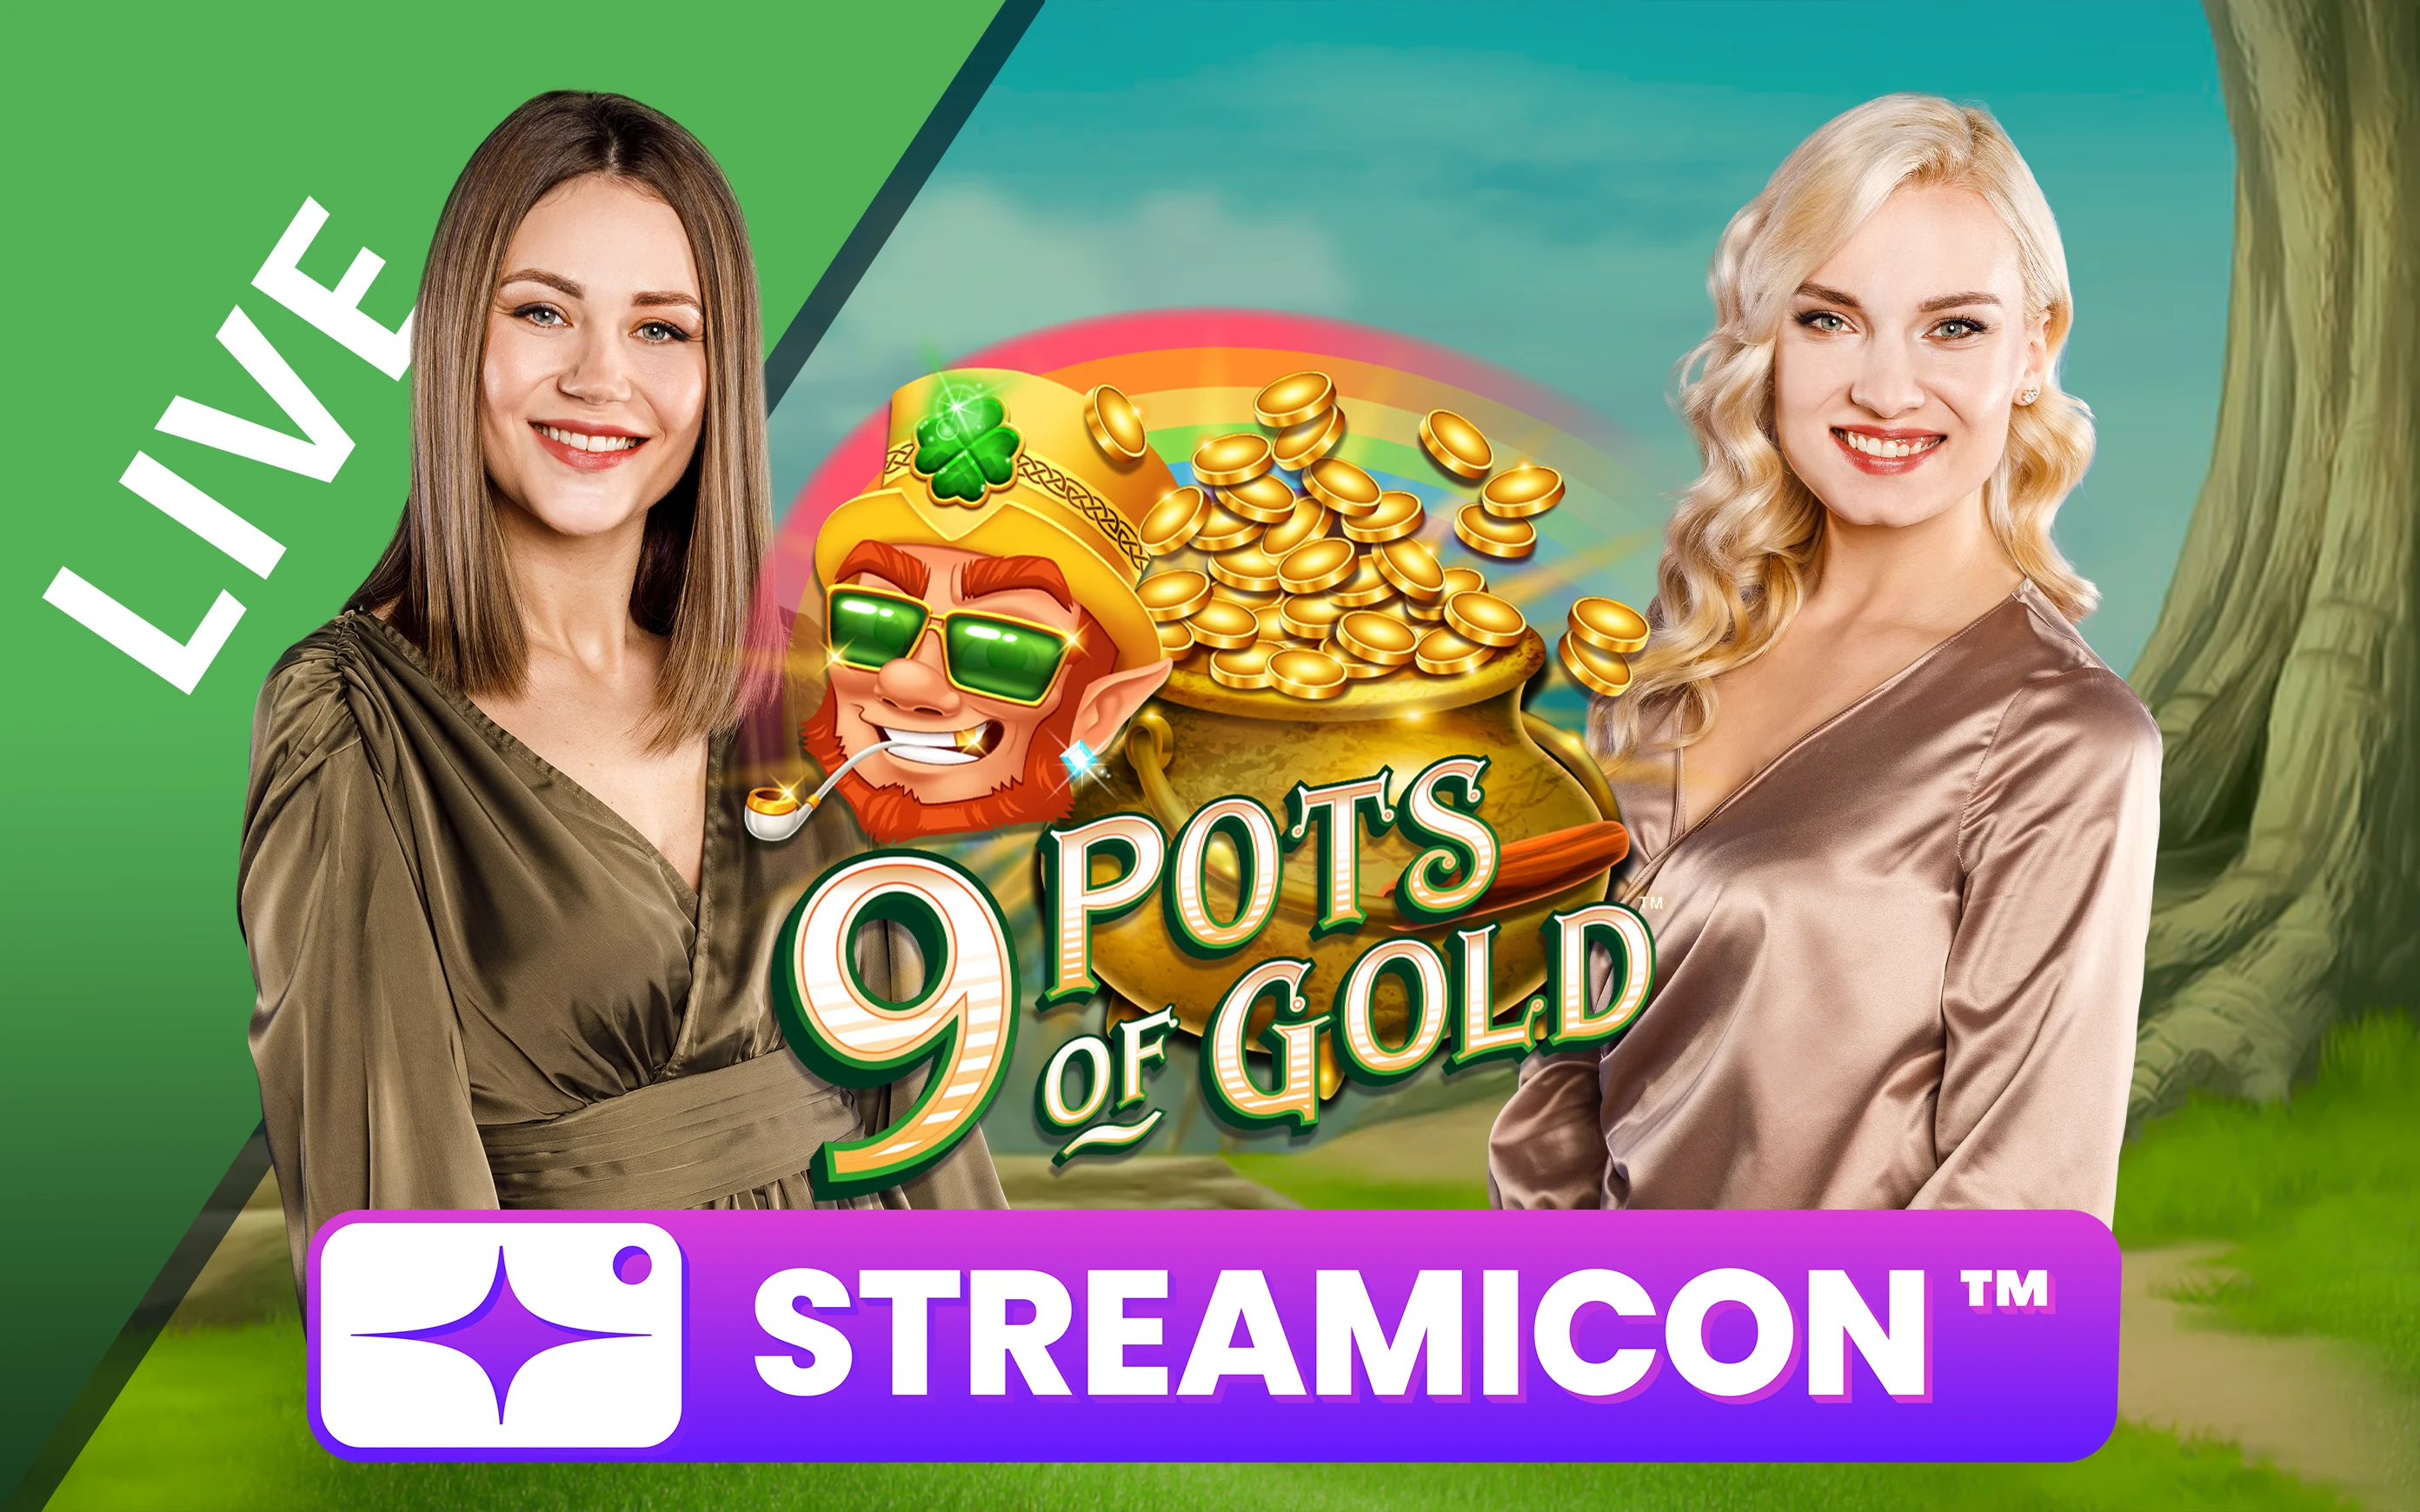 Gioca a 9 Pots of Gold™ Streamicon™ sul casino online Starcasino.be